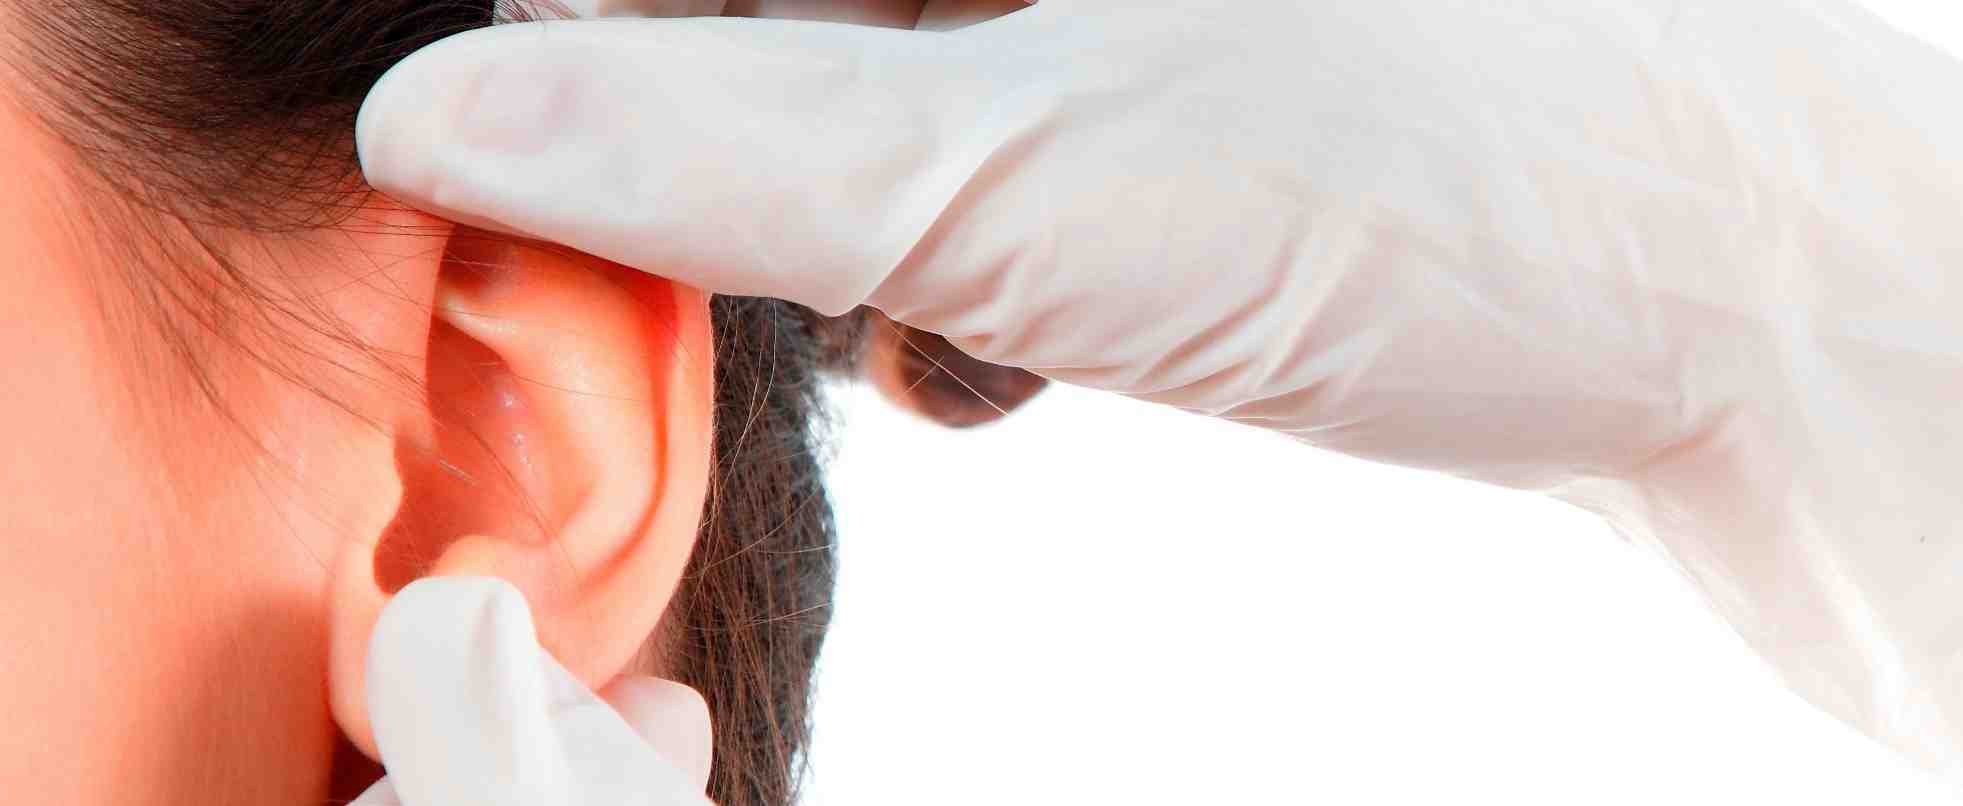 Отопластика – пластическая операция на ушной раковине